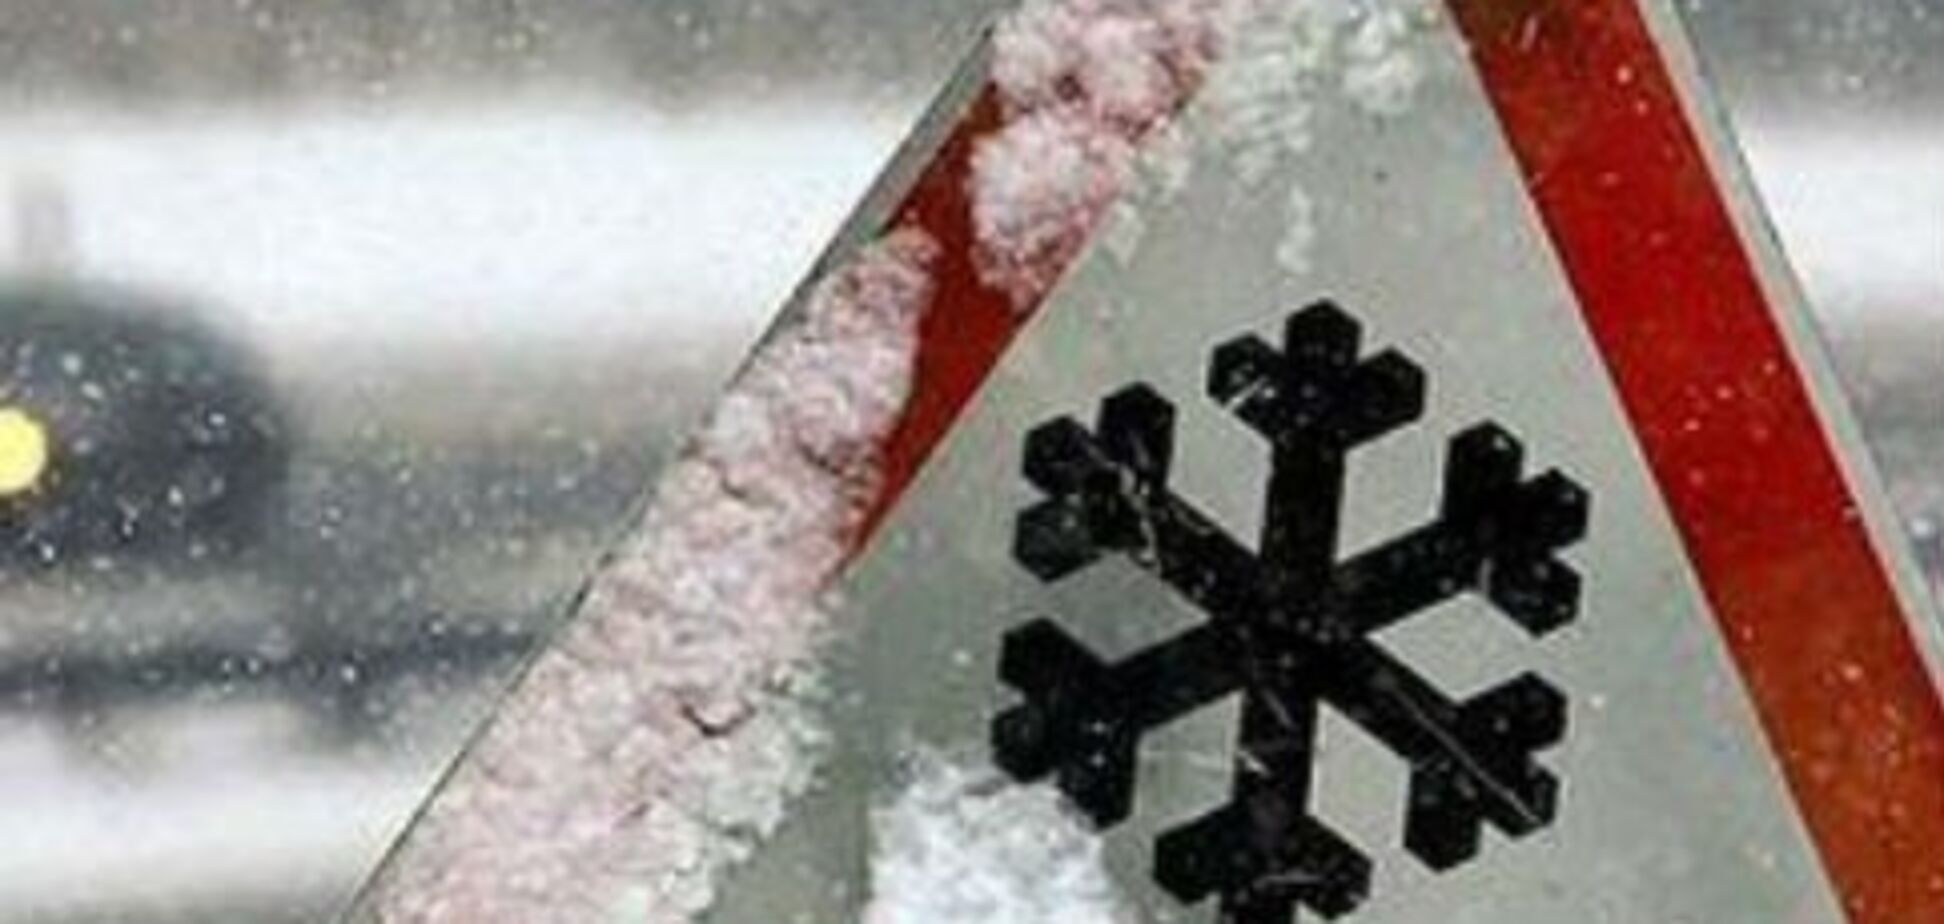 До 20 см снега и метели: синоптики предупредили об ухудшении погоды в Украине